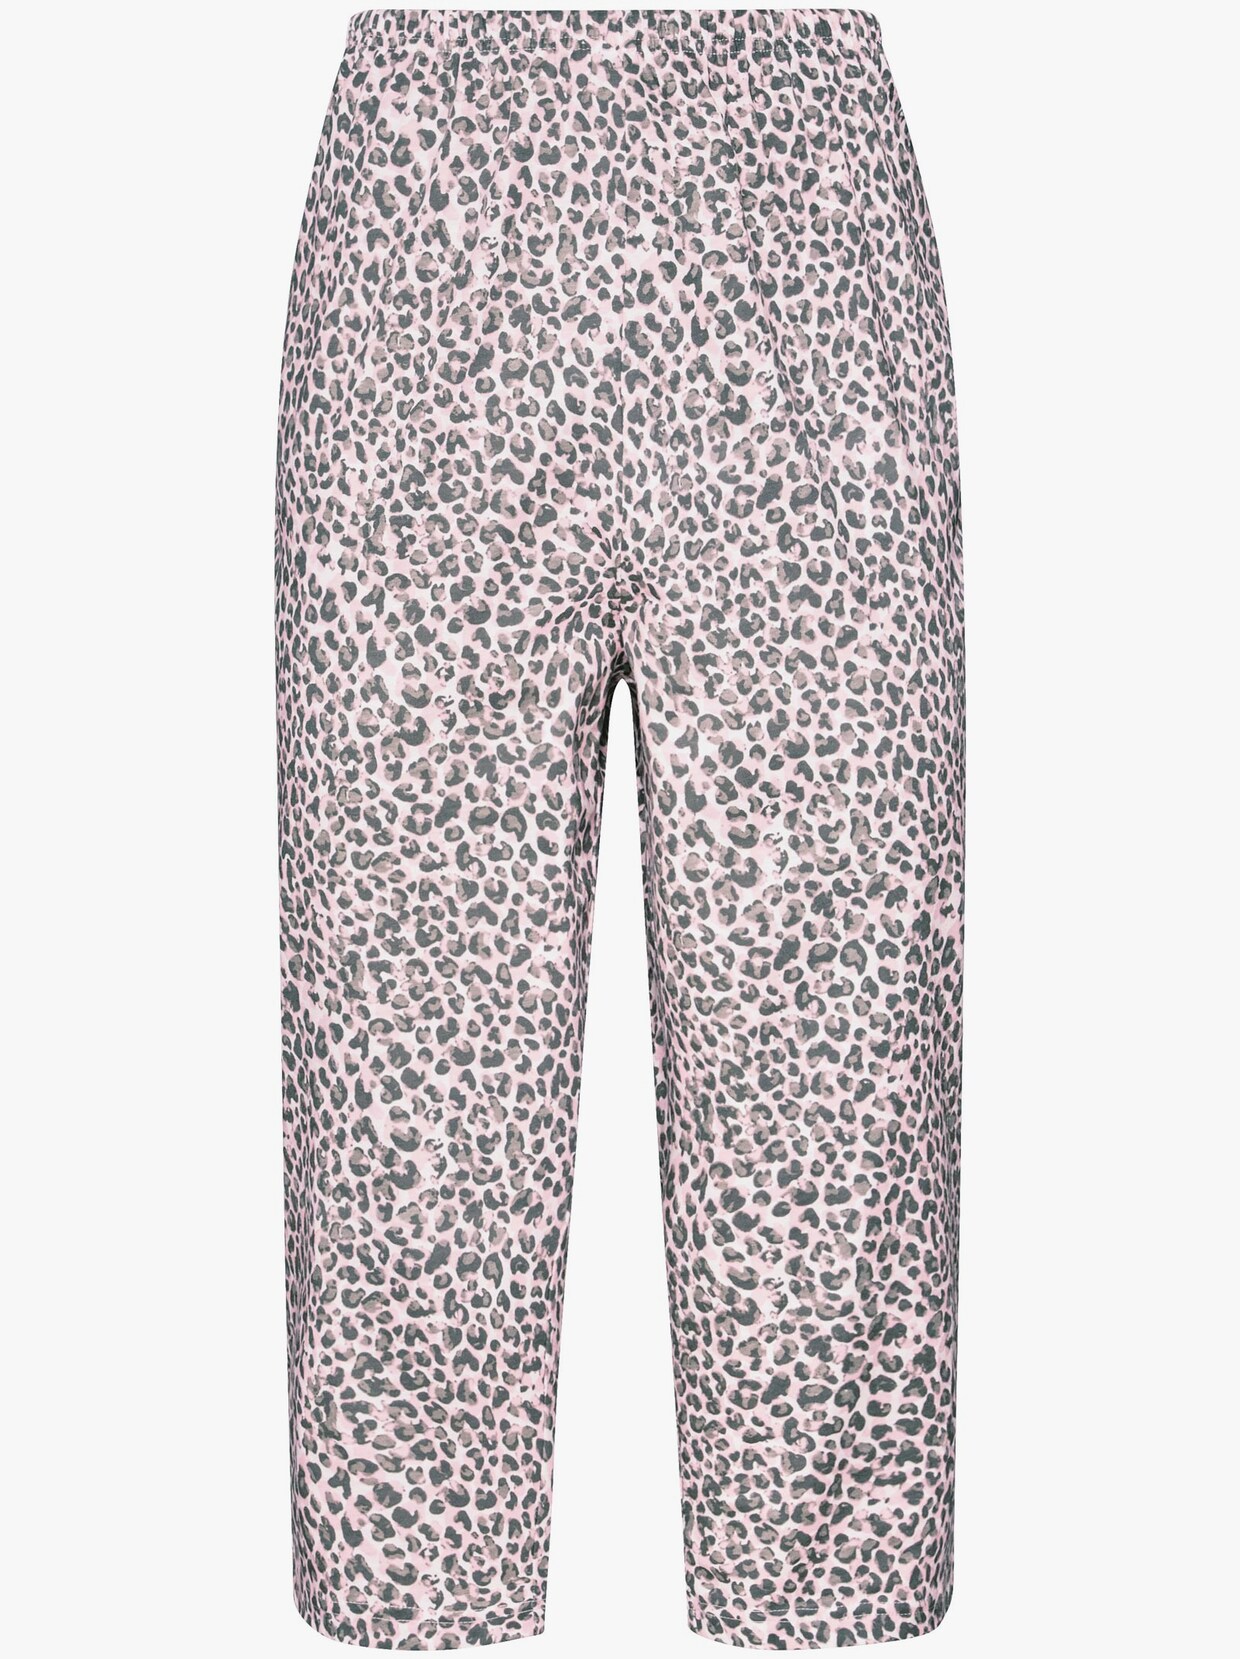 Pyžamo s capri nohavicami - svetloružovo-sivá potlač